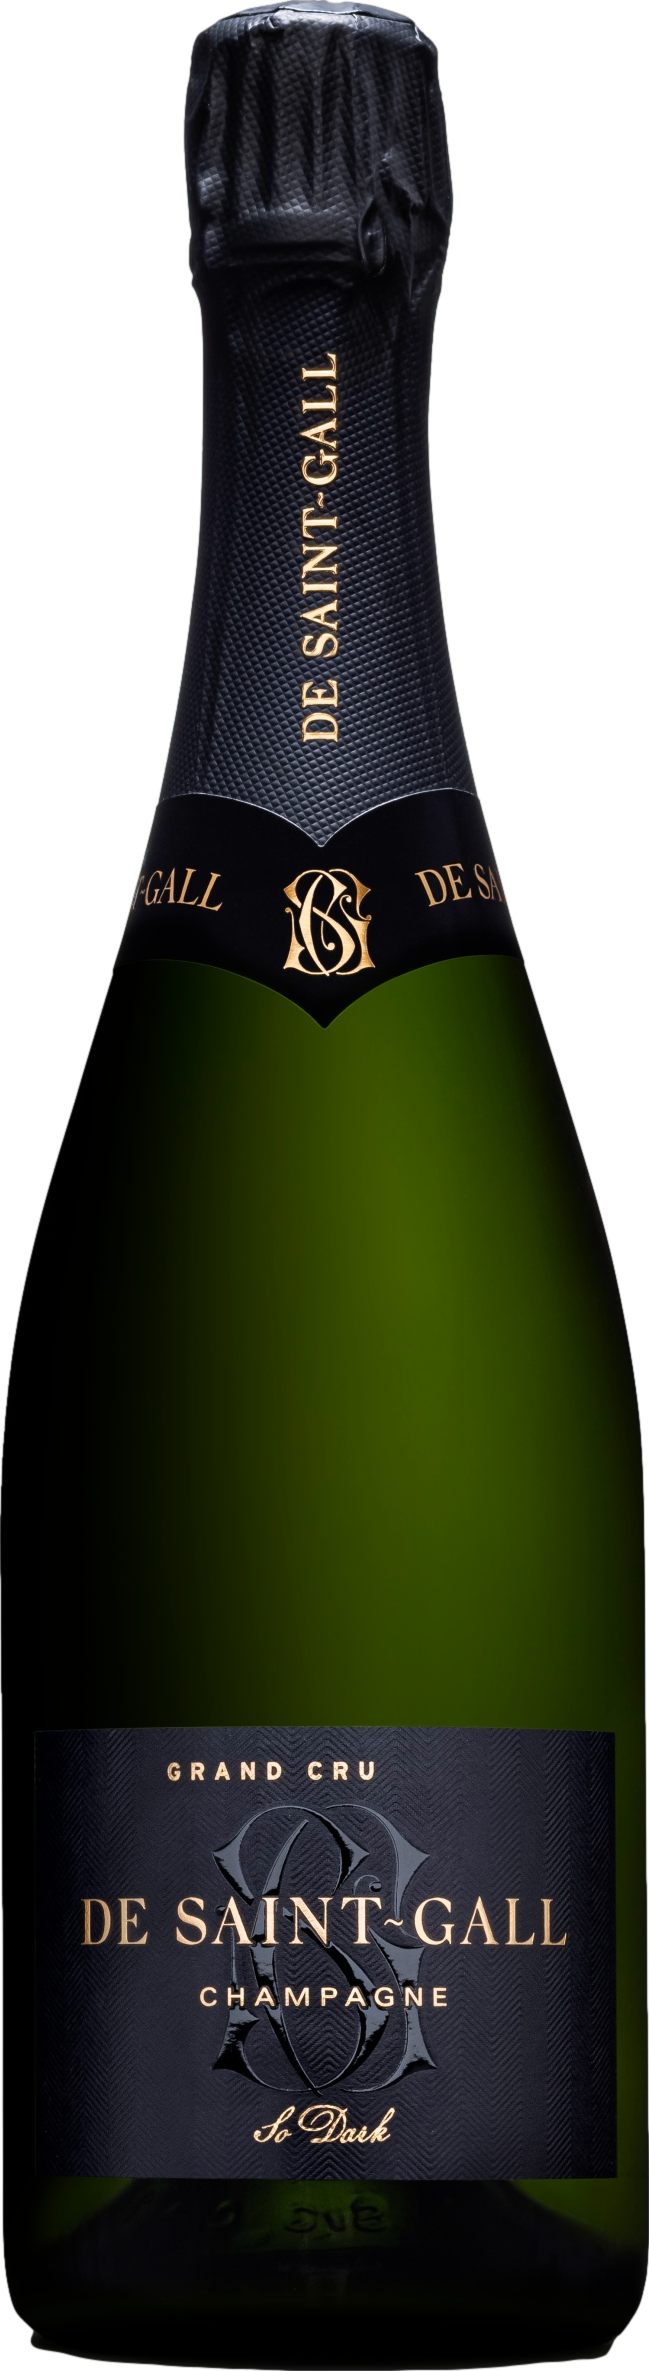 Champagne De Saint Gall So Dark Grand Cru 2016 Champagne De Saint Gall 8wines DACH